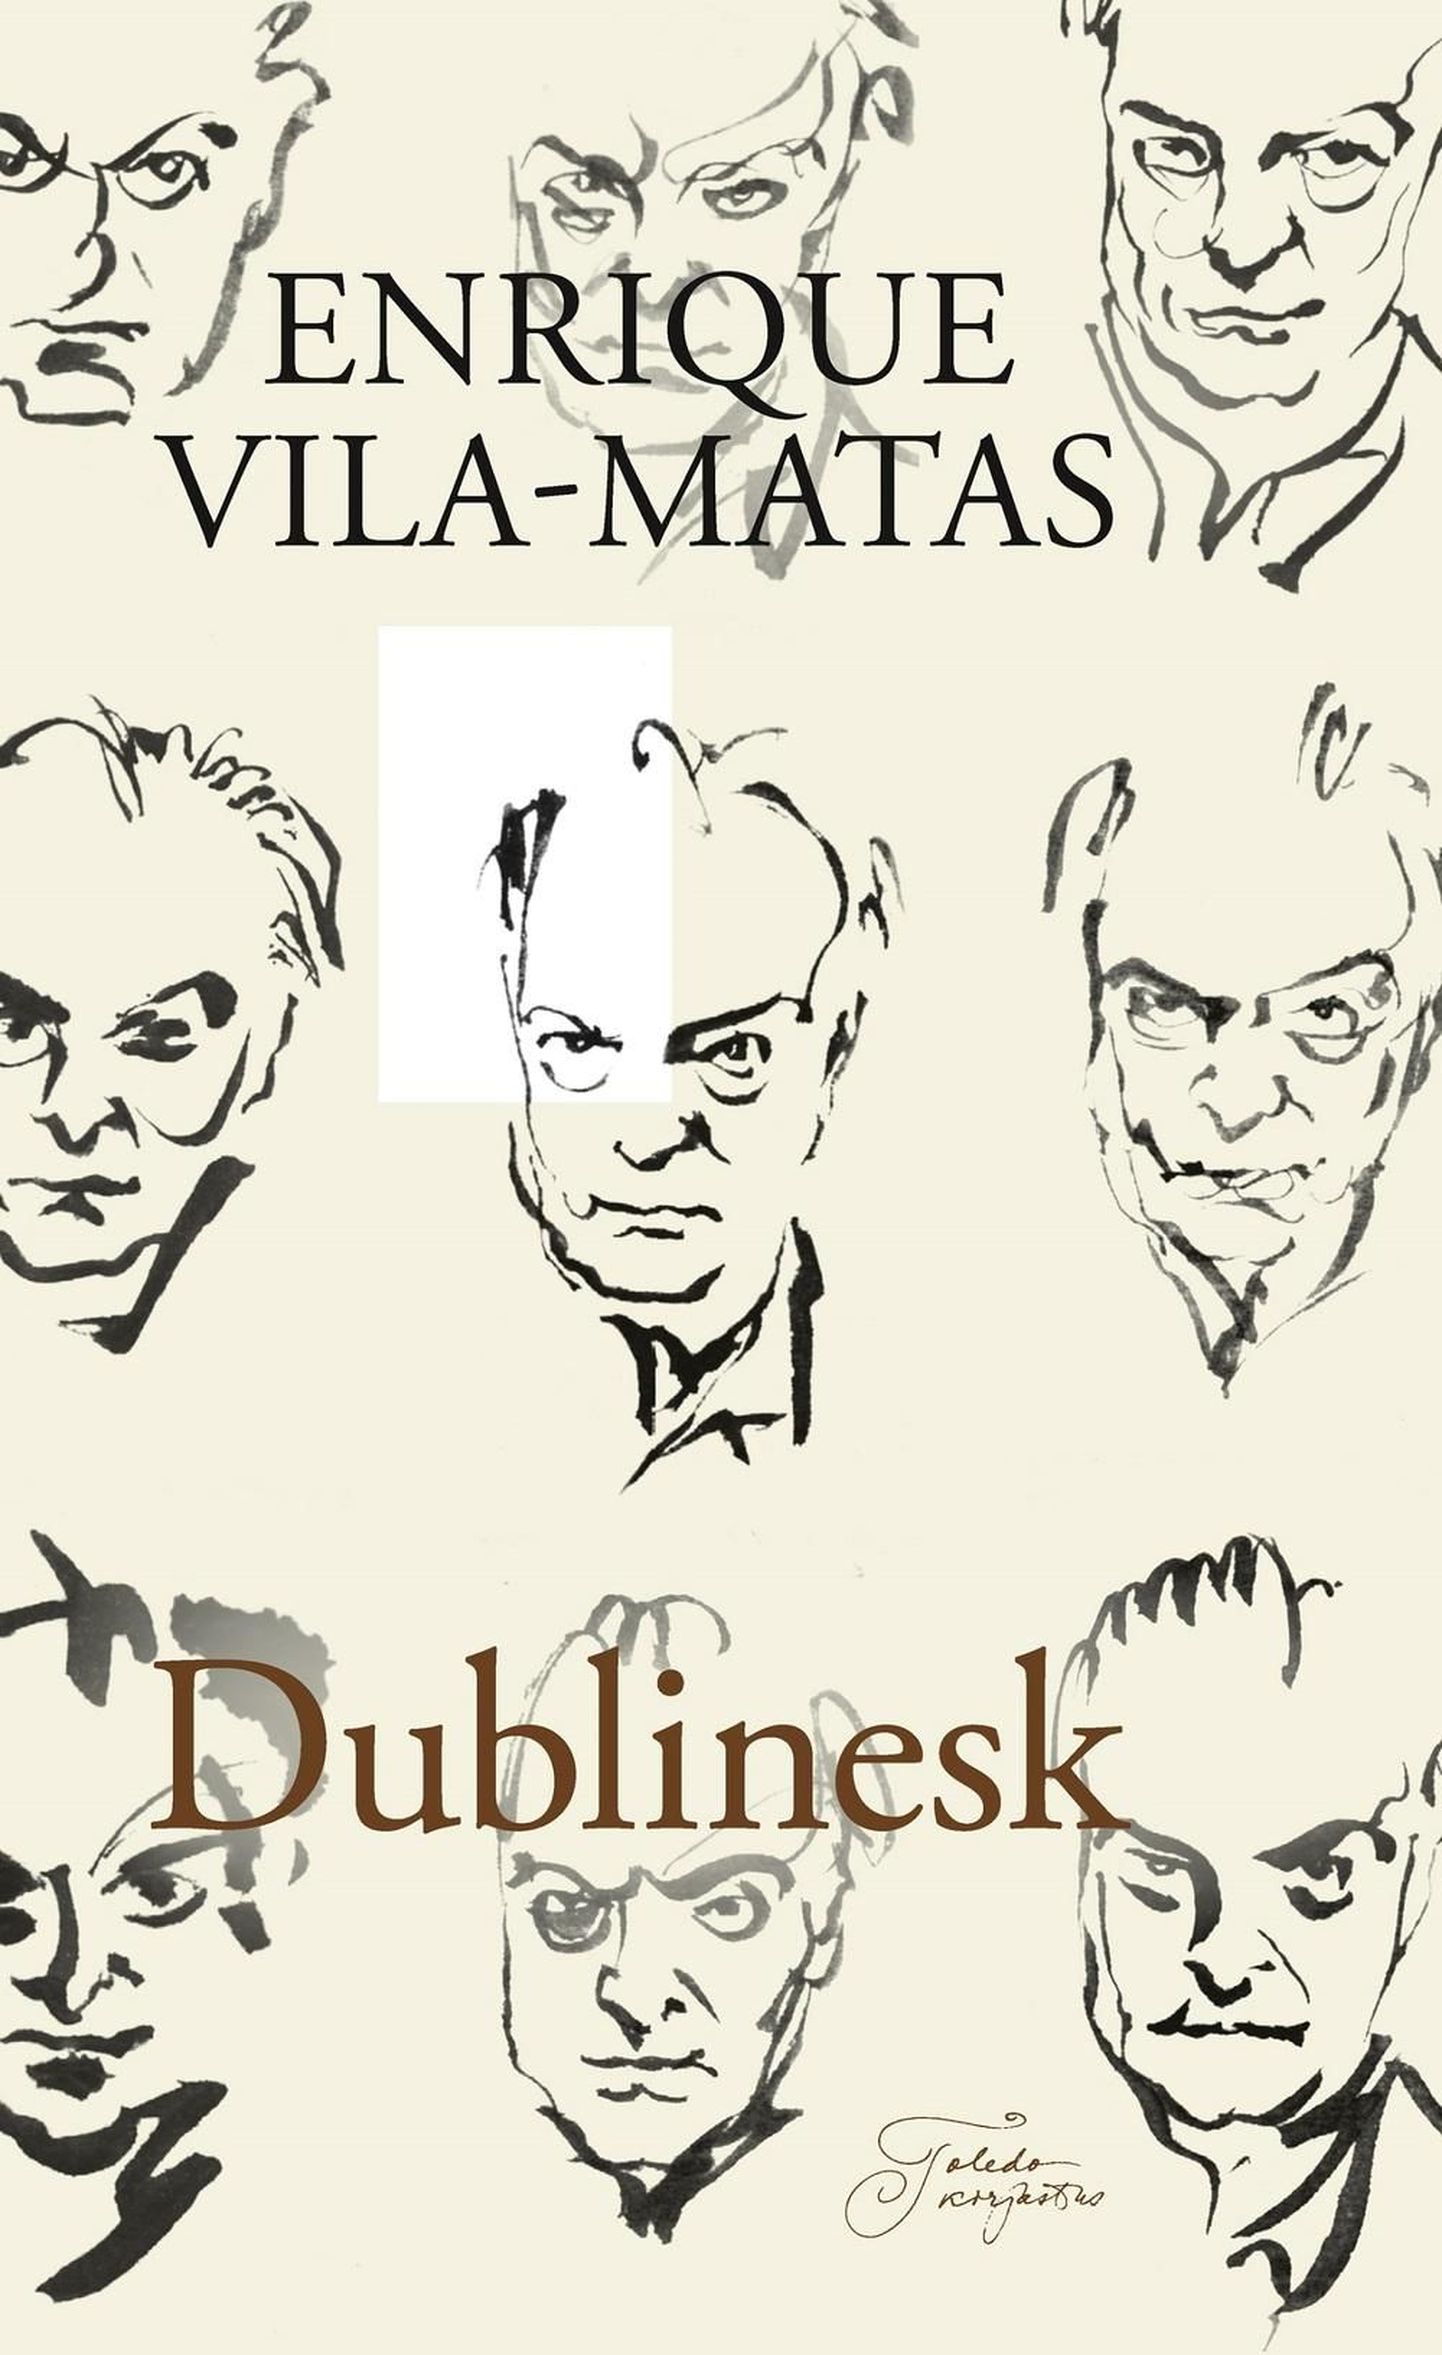 Enrique Vila-Matas "Dublinesk". Tõlkinud Triin Lõbus, Toledo kirjastus 2014, 344 lk